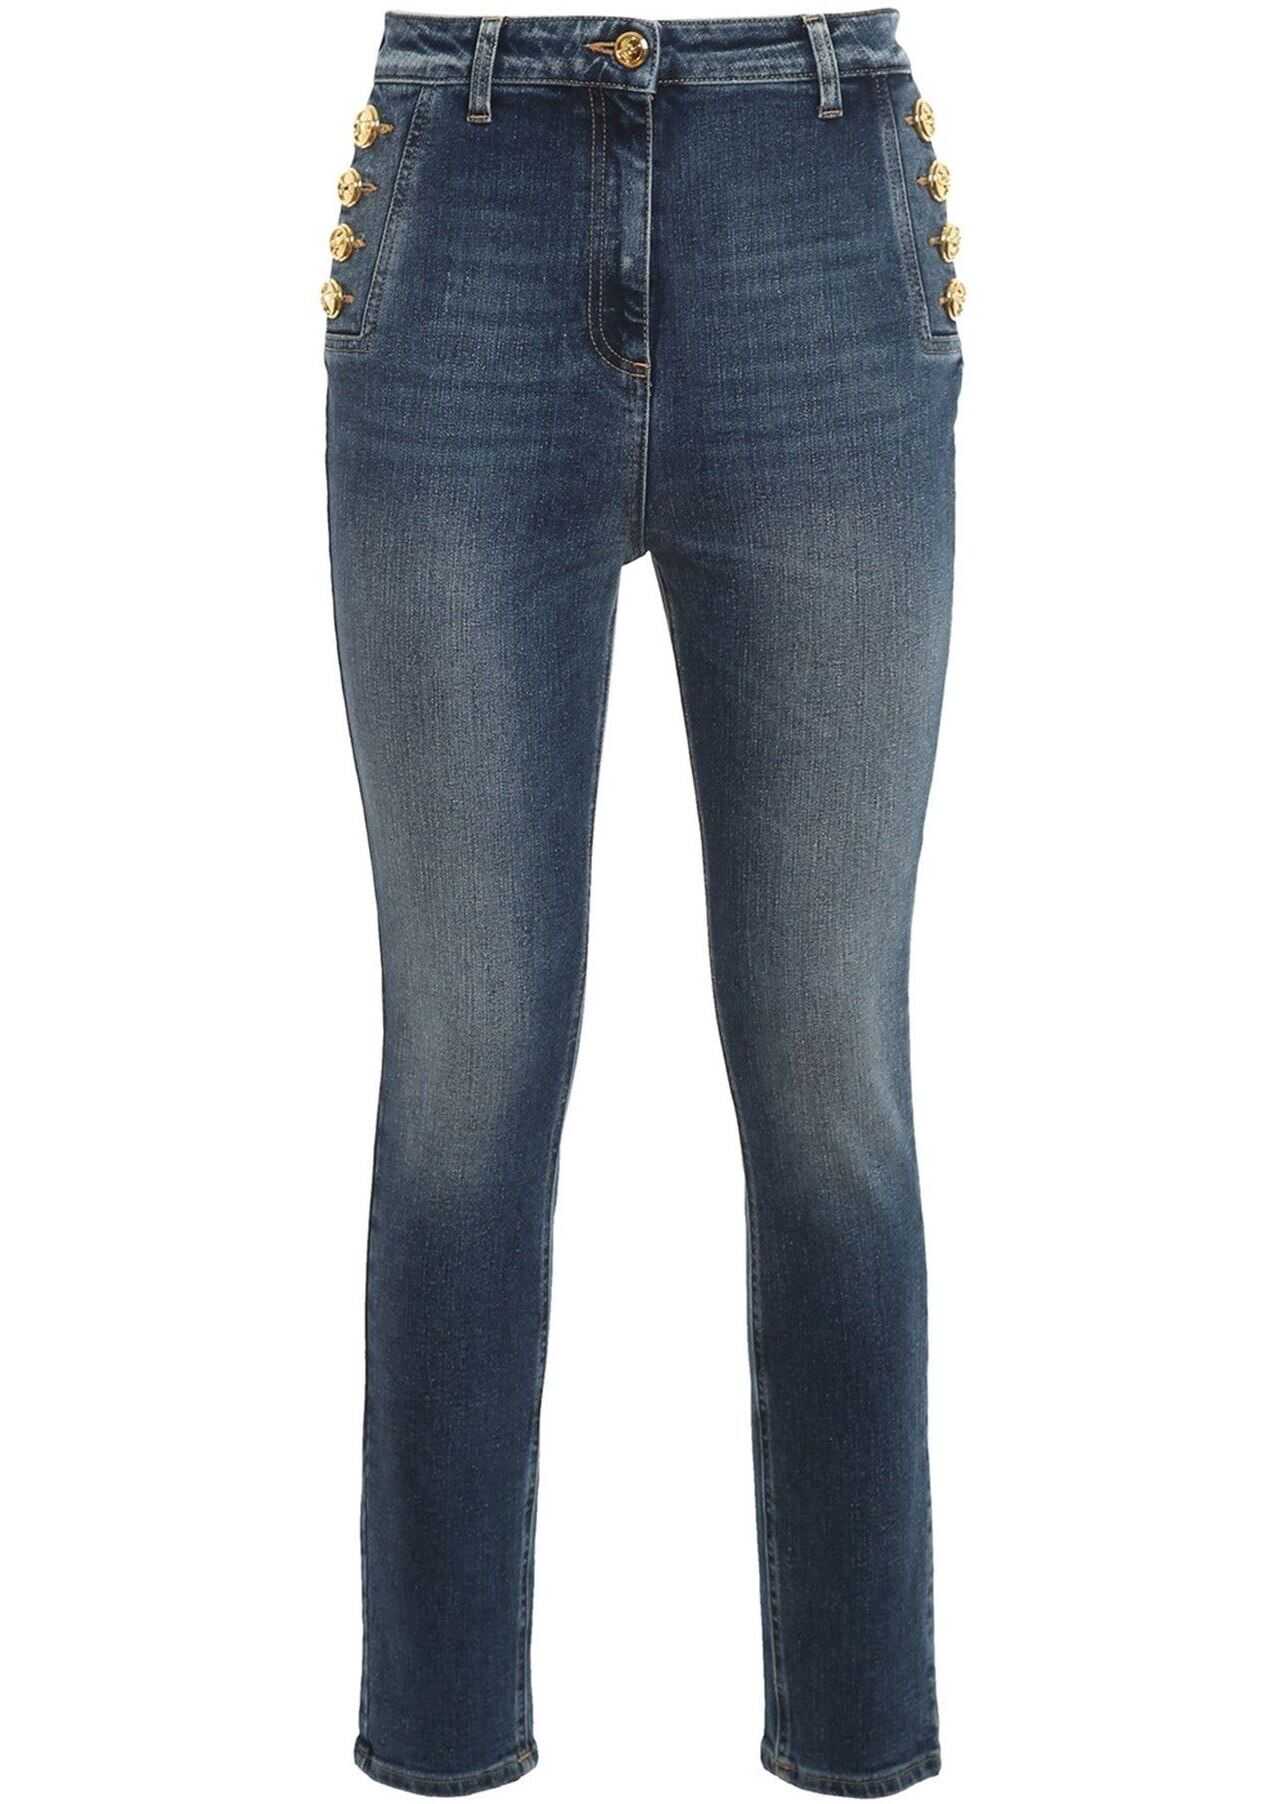 Elisabetta Franchi Golden Button High Waist Jeans In Blue PJ02I11E2104 Blue